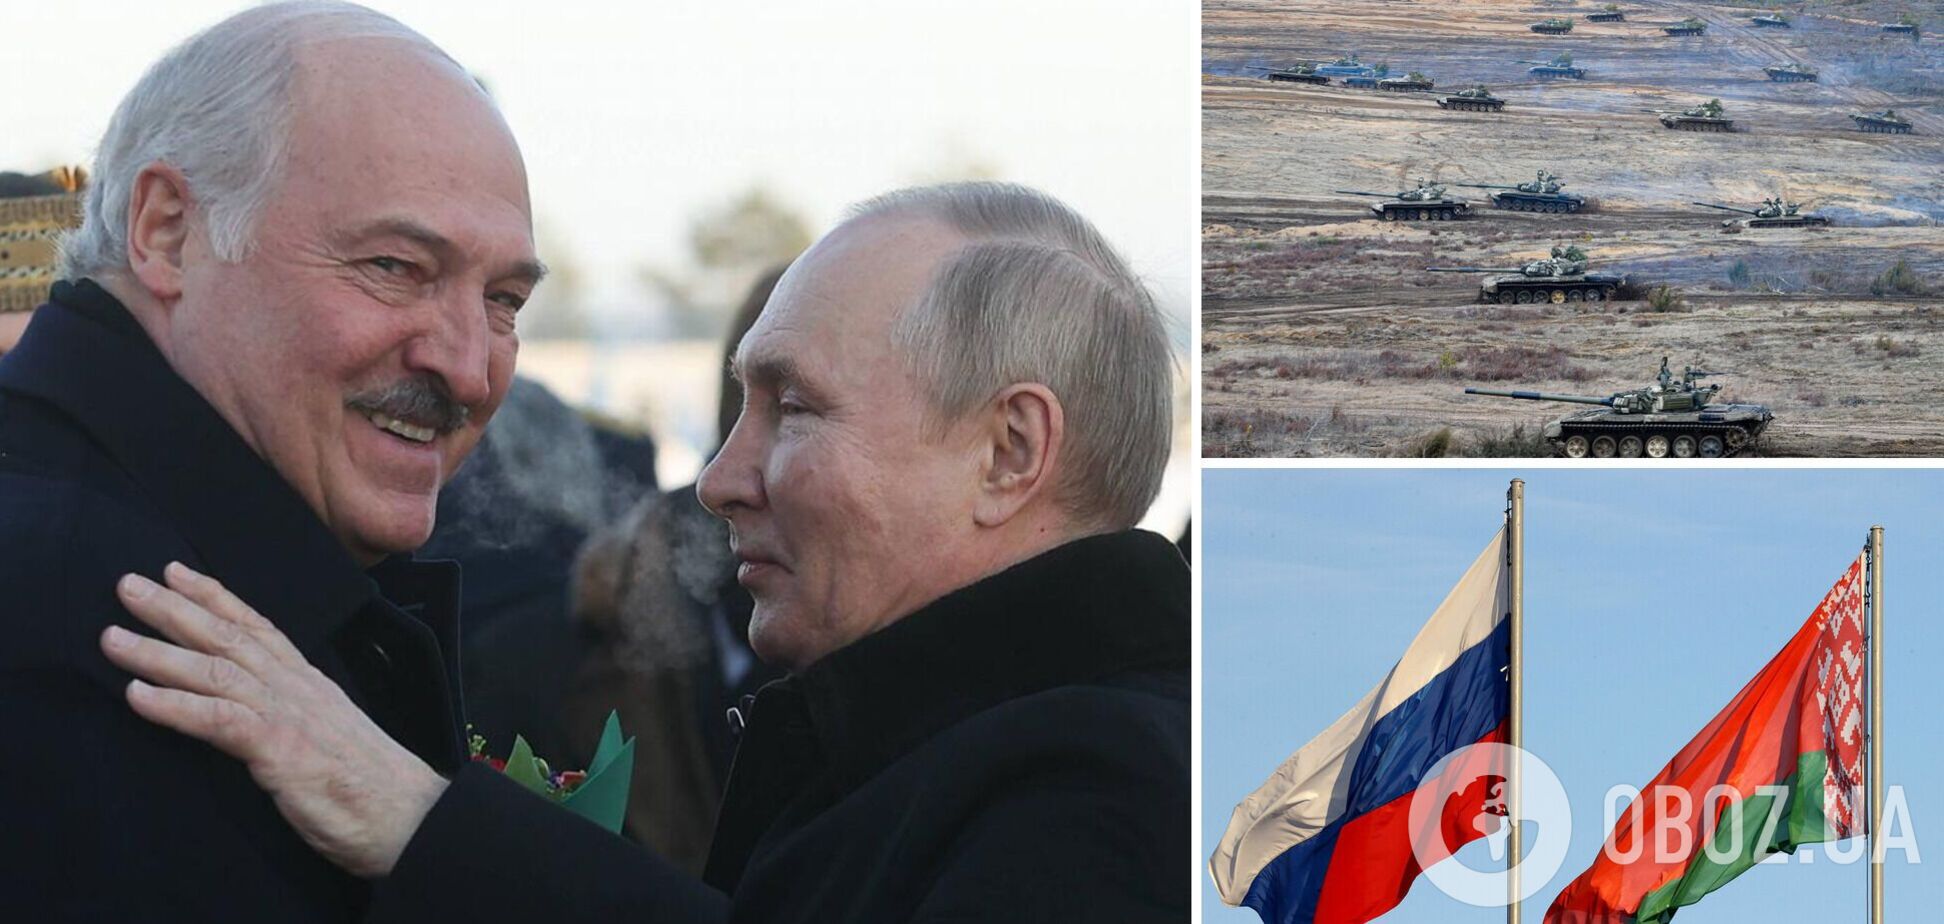 Кремль пытается скрыть истинные намерения относительно Беларуси, а Лукашенко 'маневрирует' – ISW о переговорах в Минске